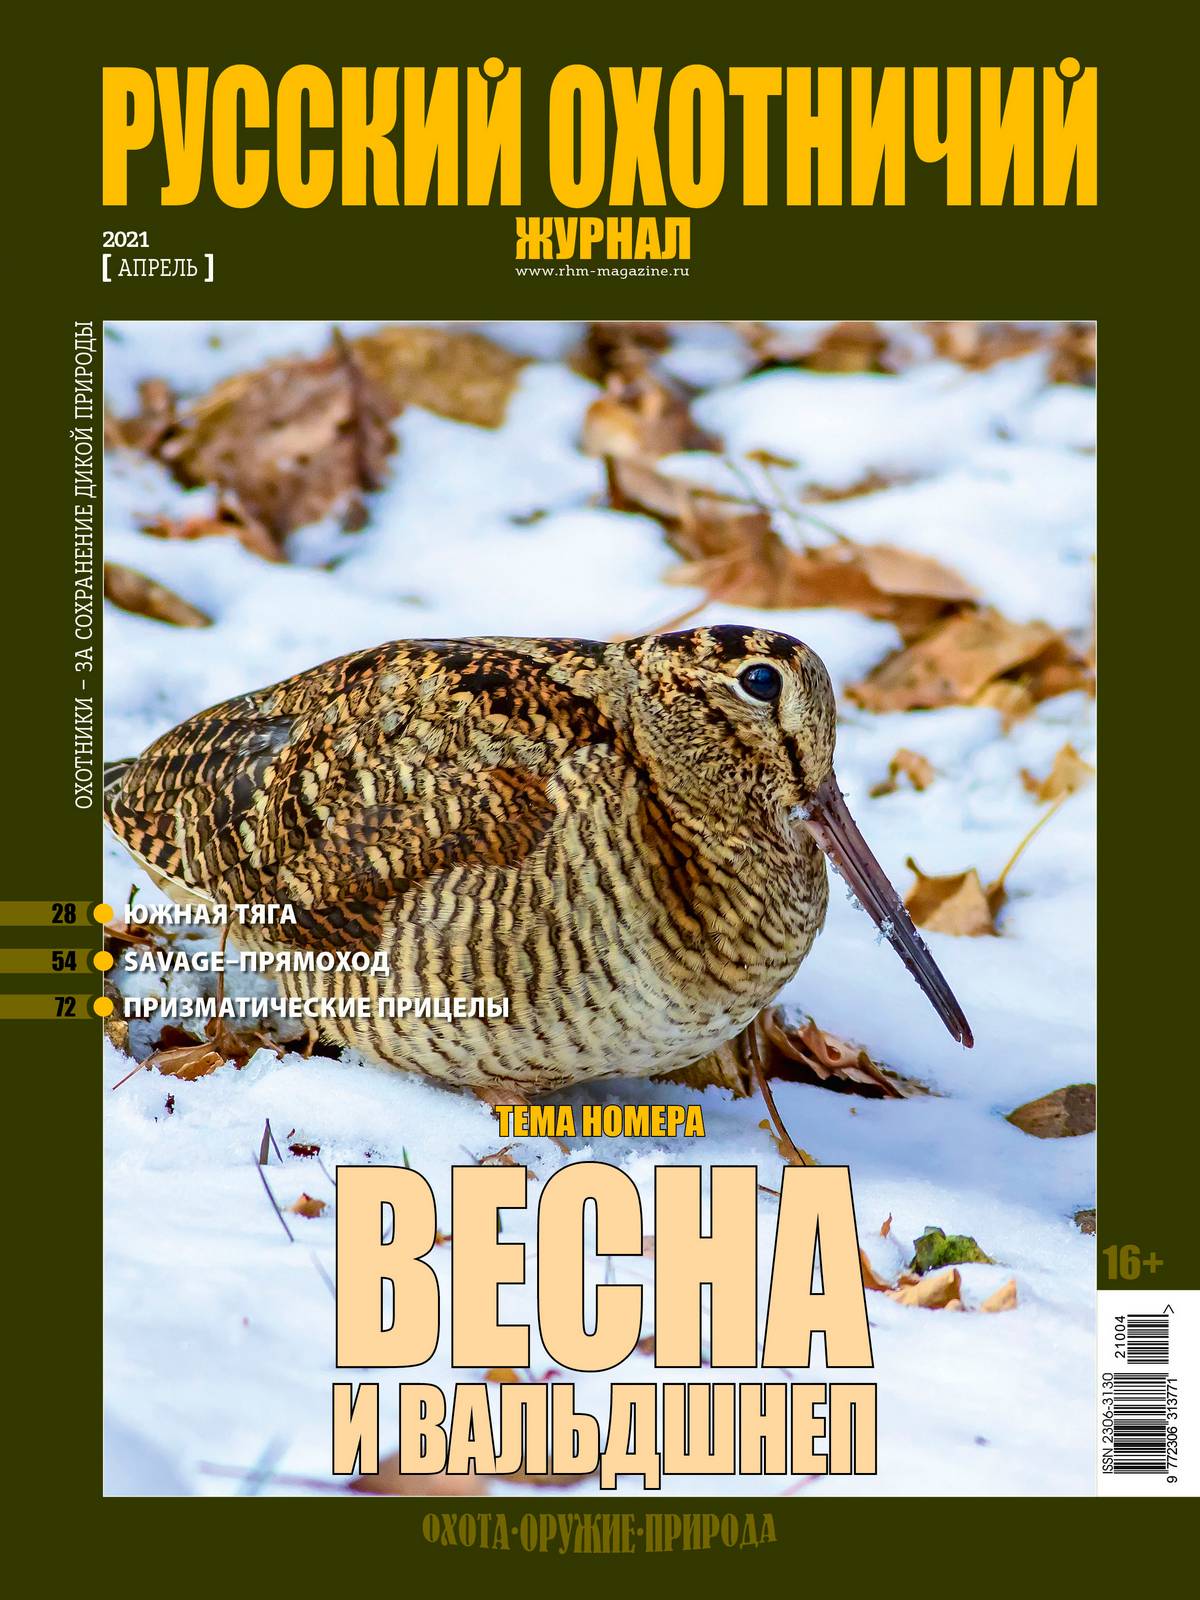 Весна и вальдшнеп. «Русский охотничий журнал», №4 апрель 2021